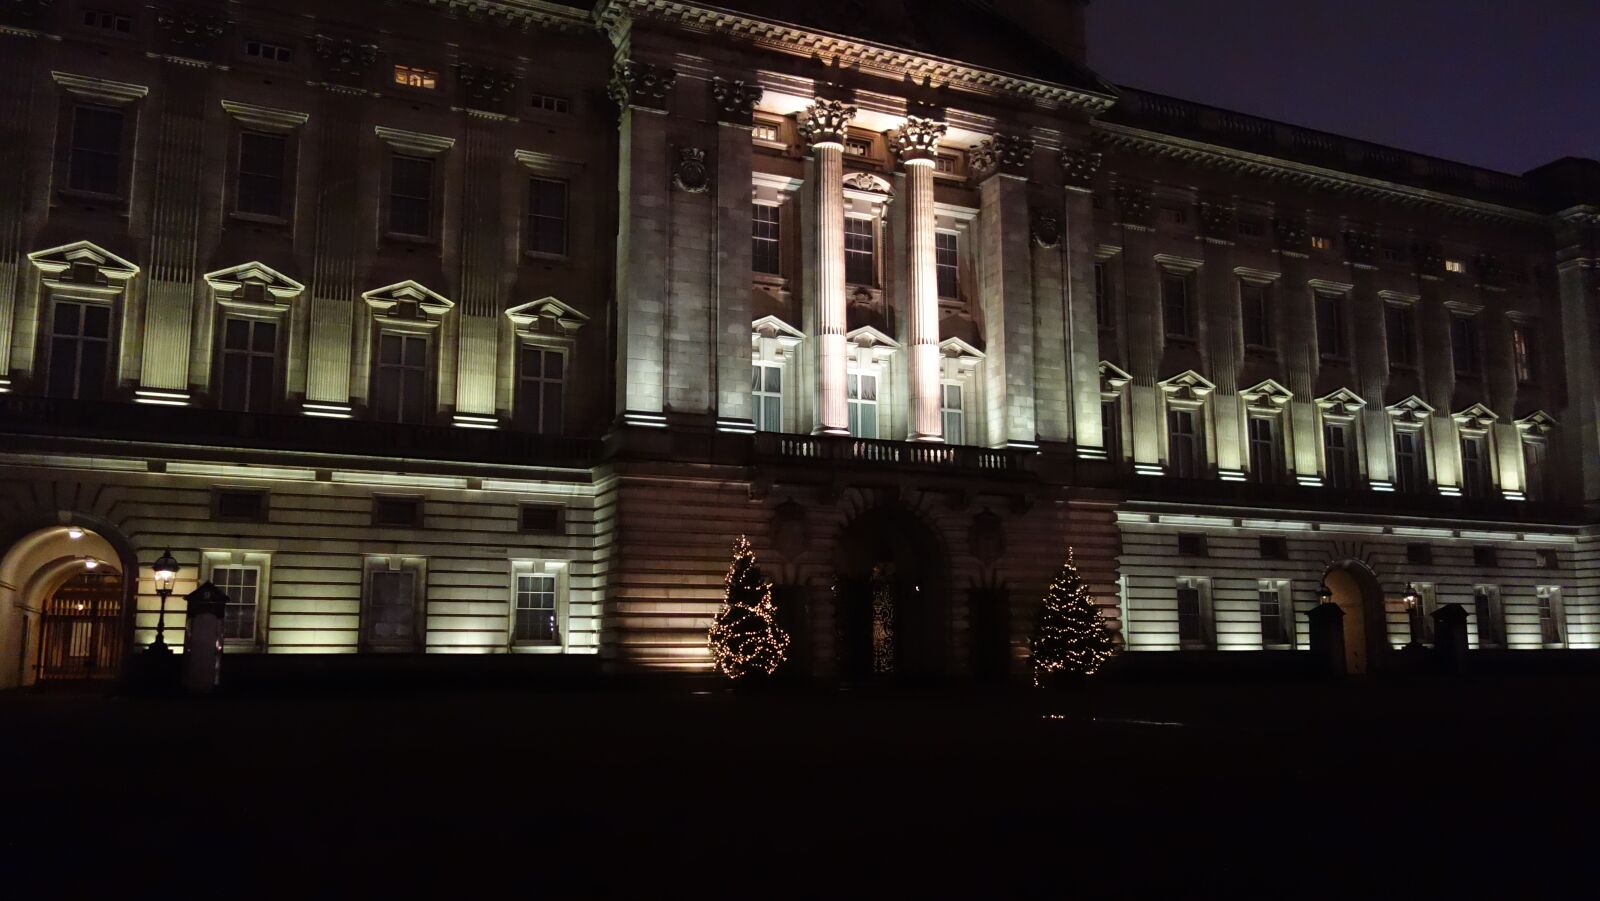 Sony Cyber-shot DSC-RX100 sample photo. London, night, palace photography